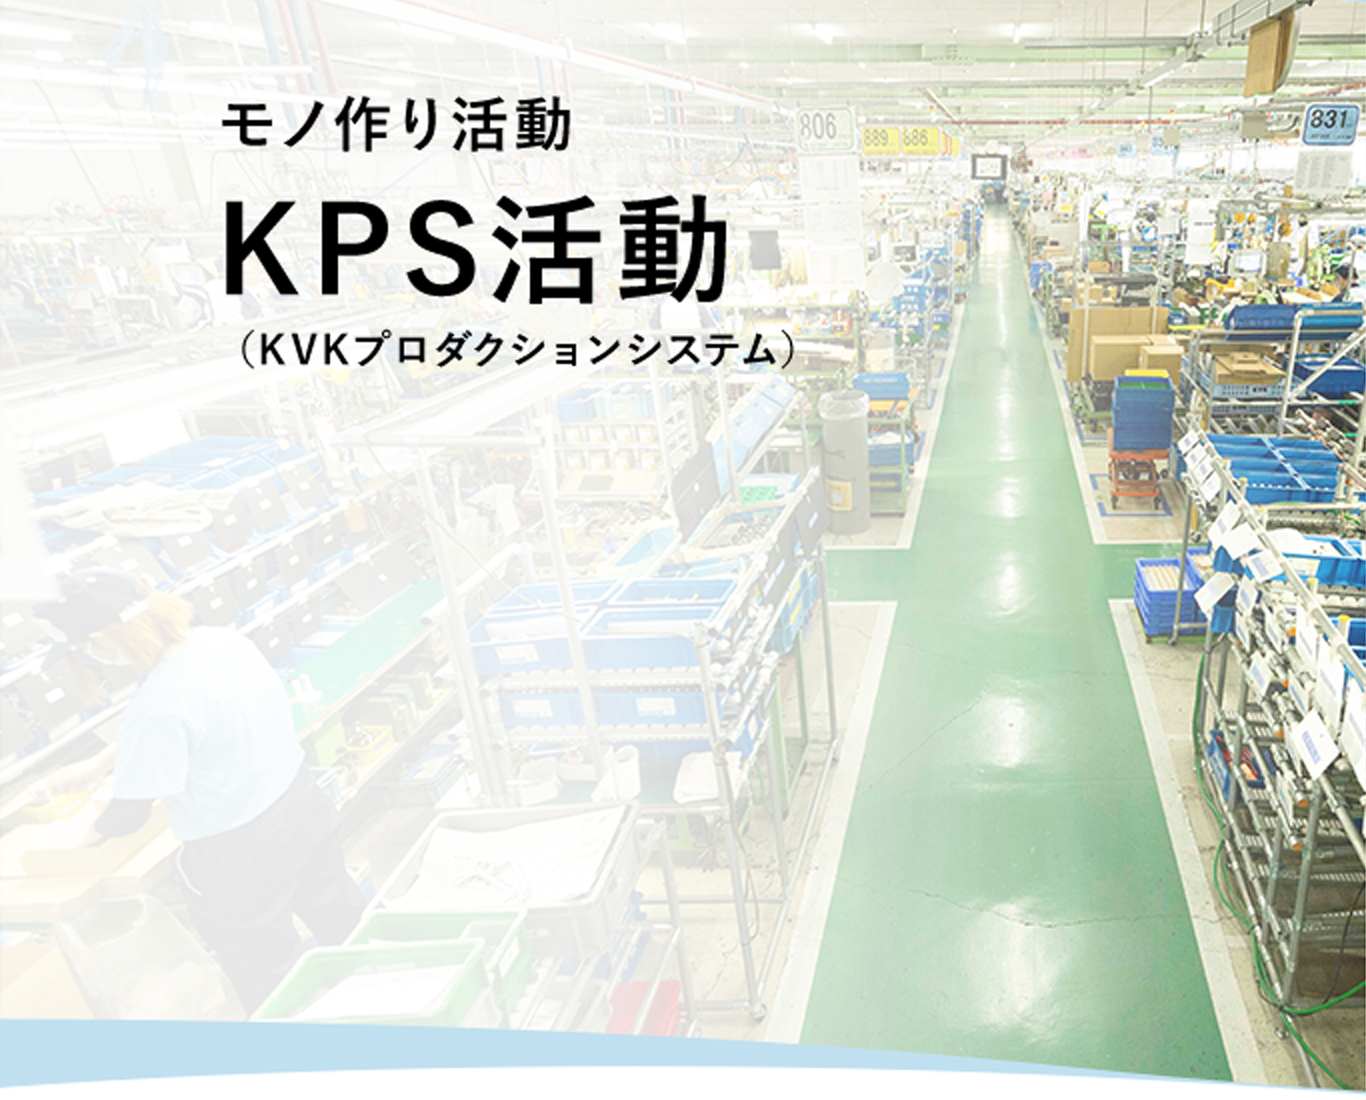 モノ作り活動、KPS活動（KVKプロダクションシステム）